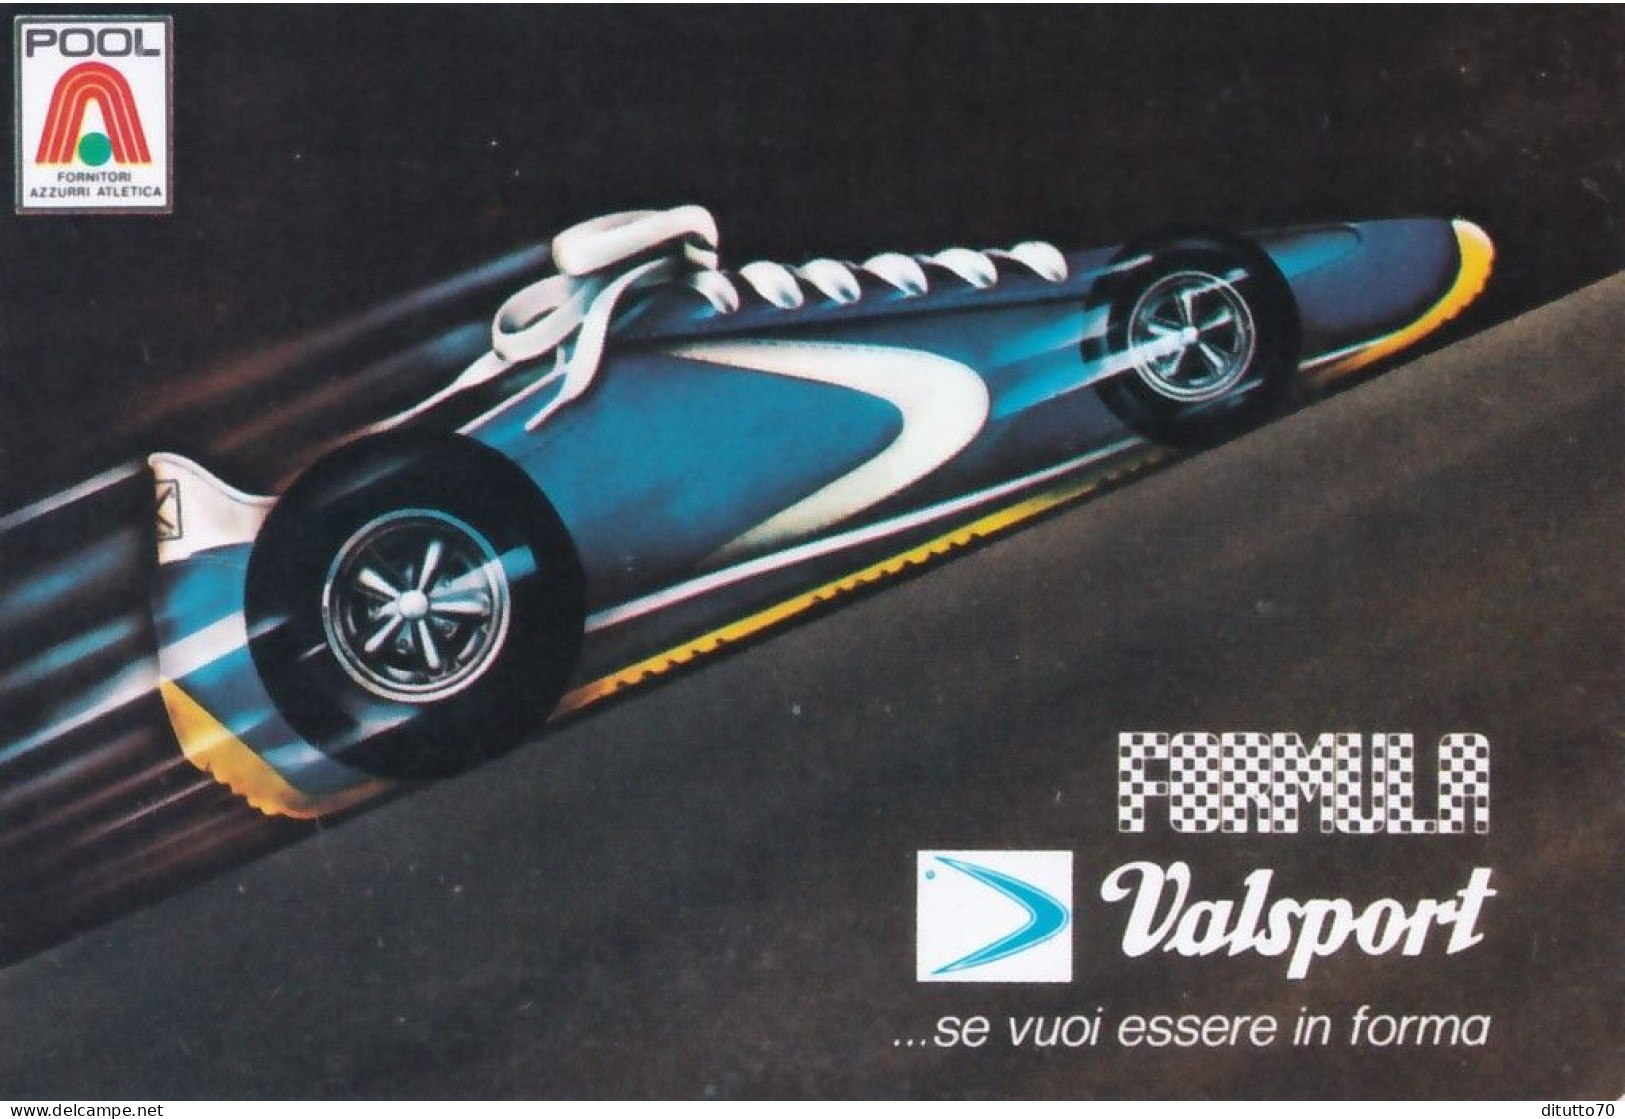 Calendarietto - Valsport - Anno 1977 - Formato Piccolo : 1971-80